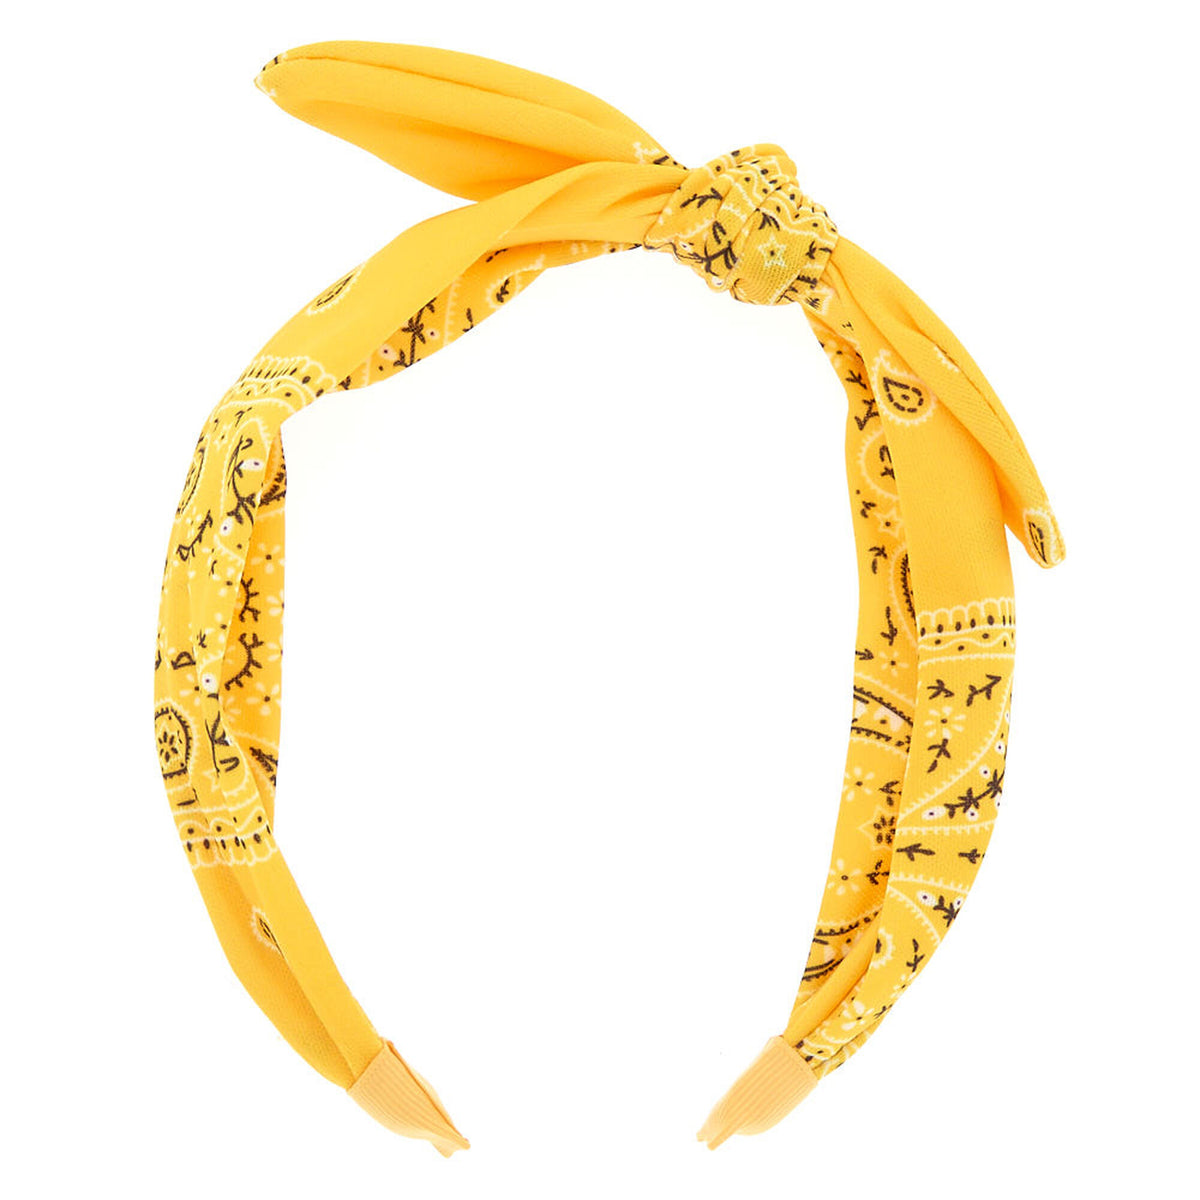 Yellow Bandana Knotted Headband